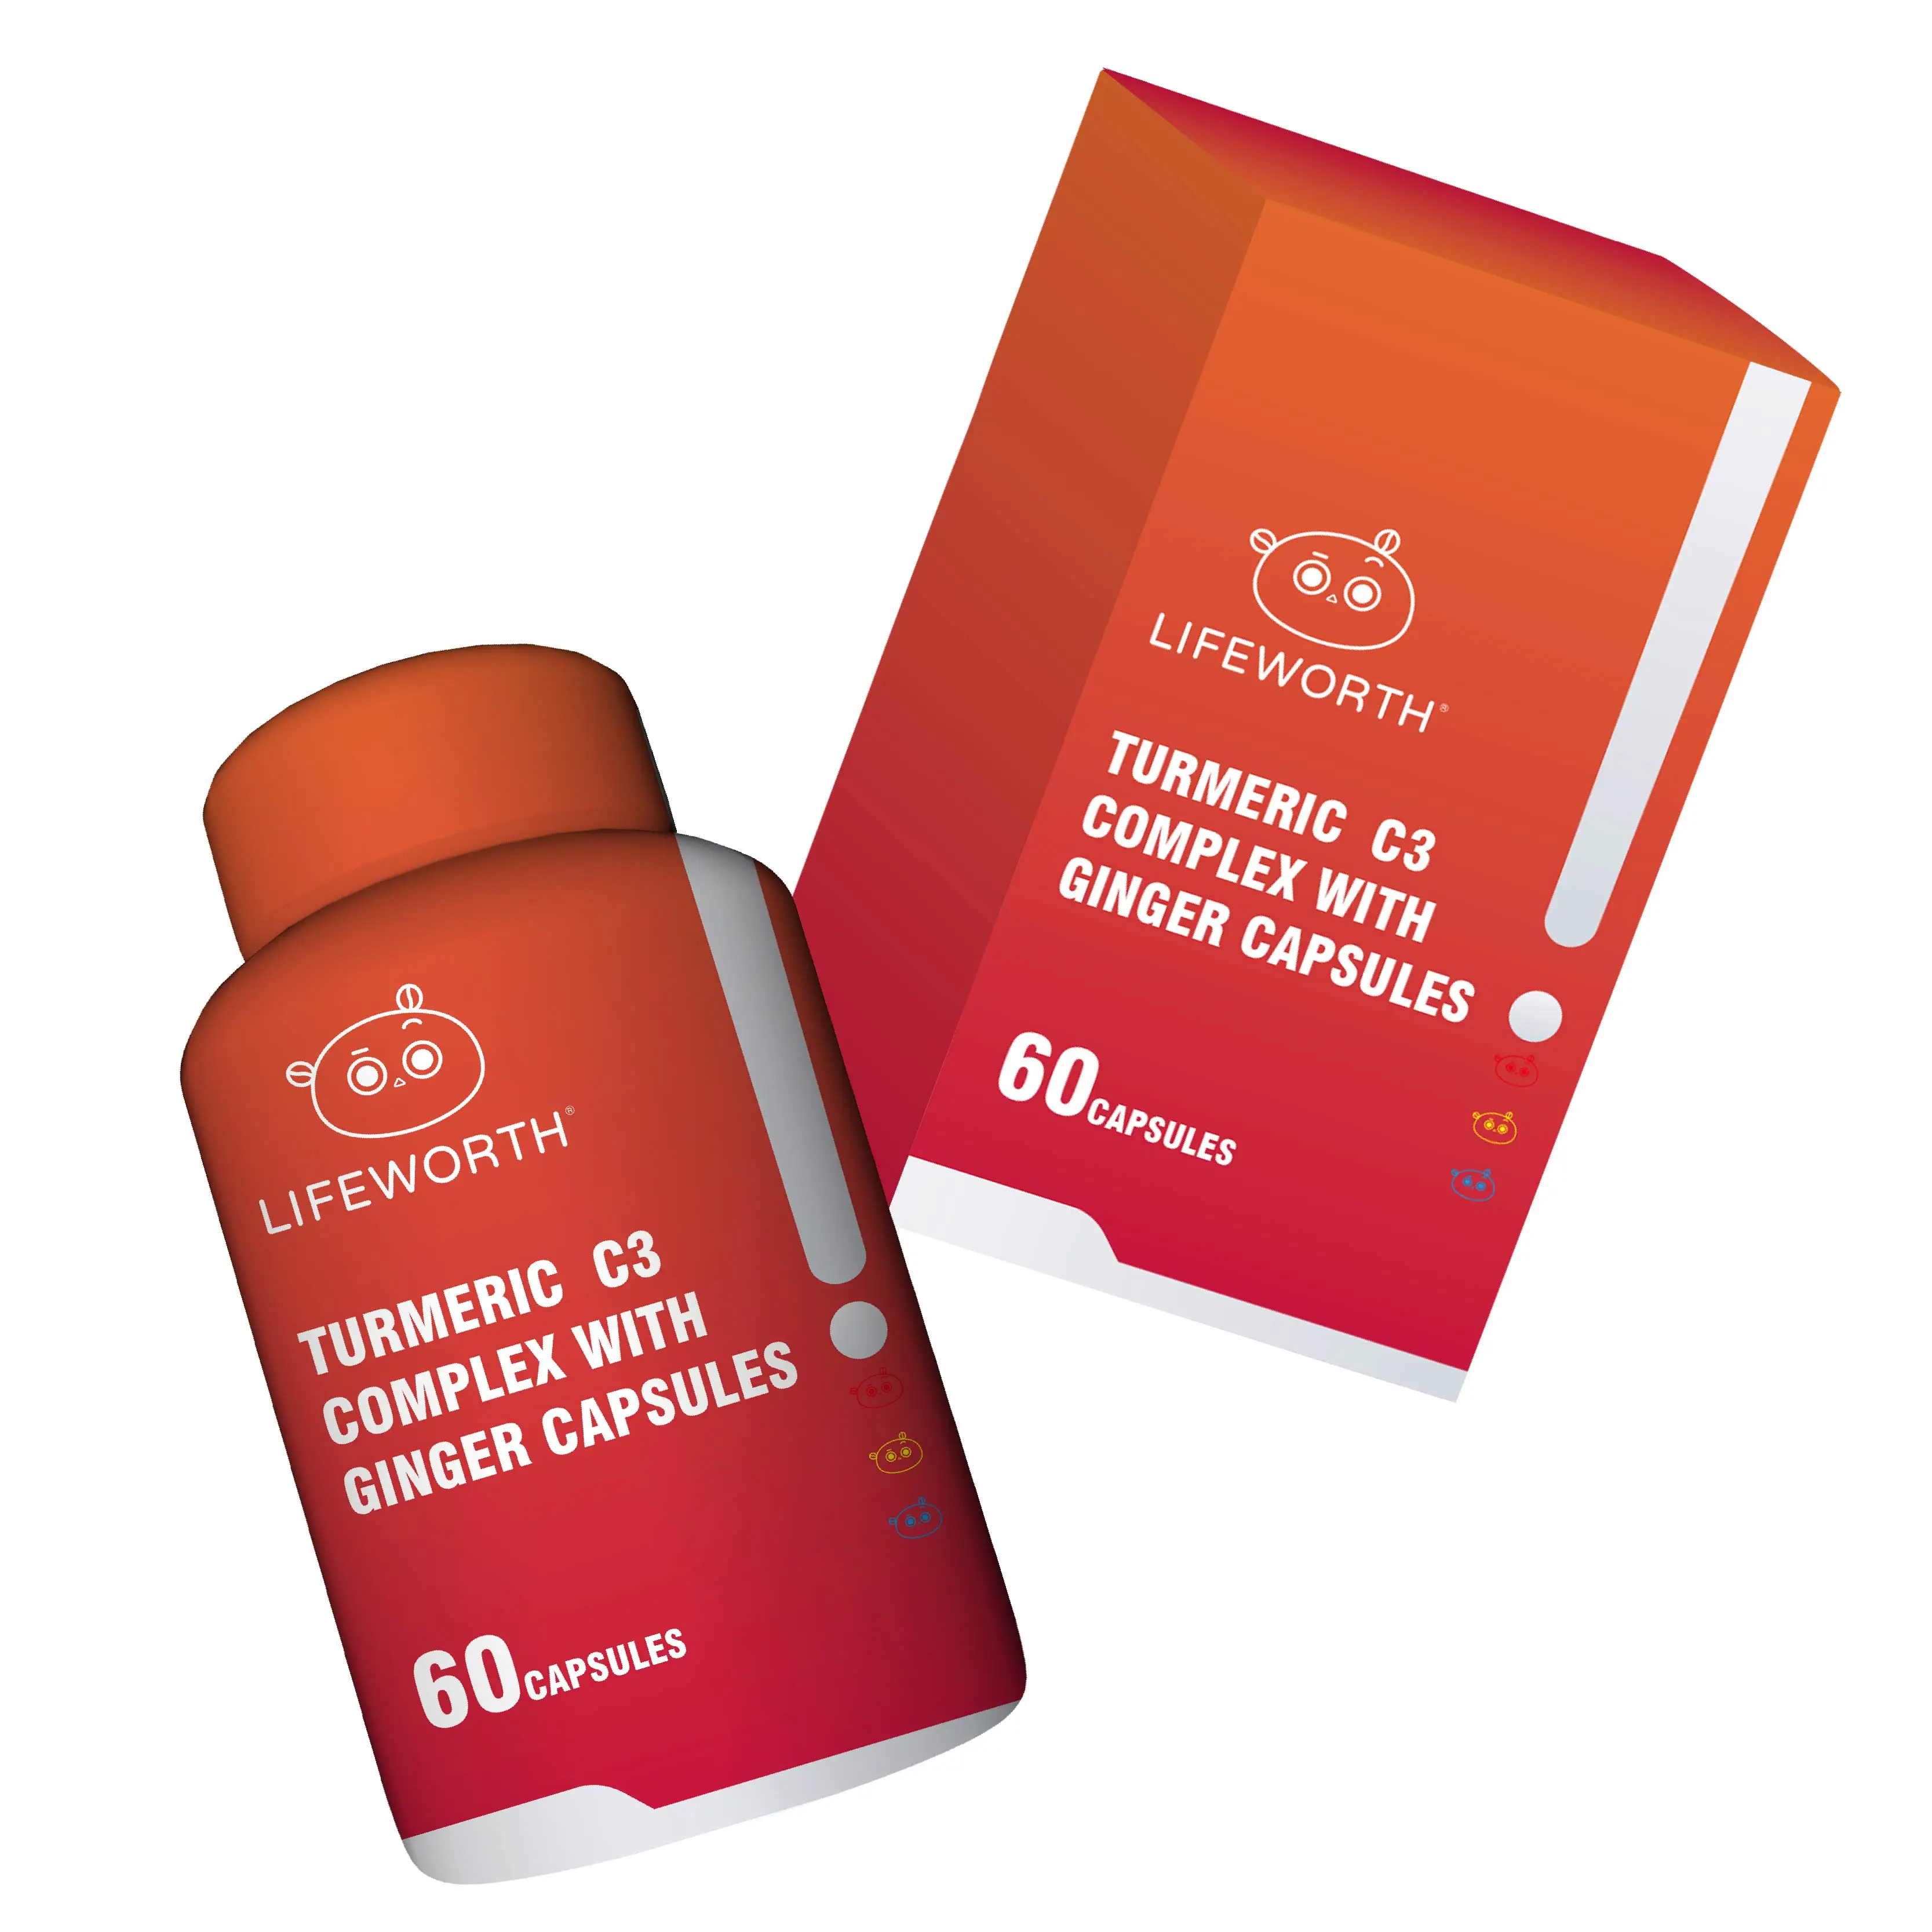 Экстракт куркумы от частного бренда Lifeworth, пищевая добавка для здоровья, капсула куркумина c3, комплекс с биоперином имбирем